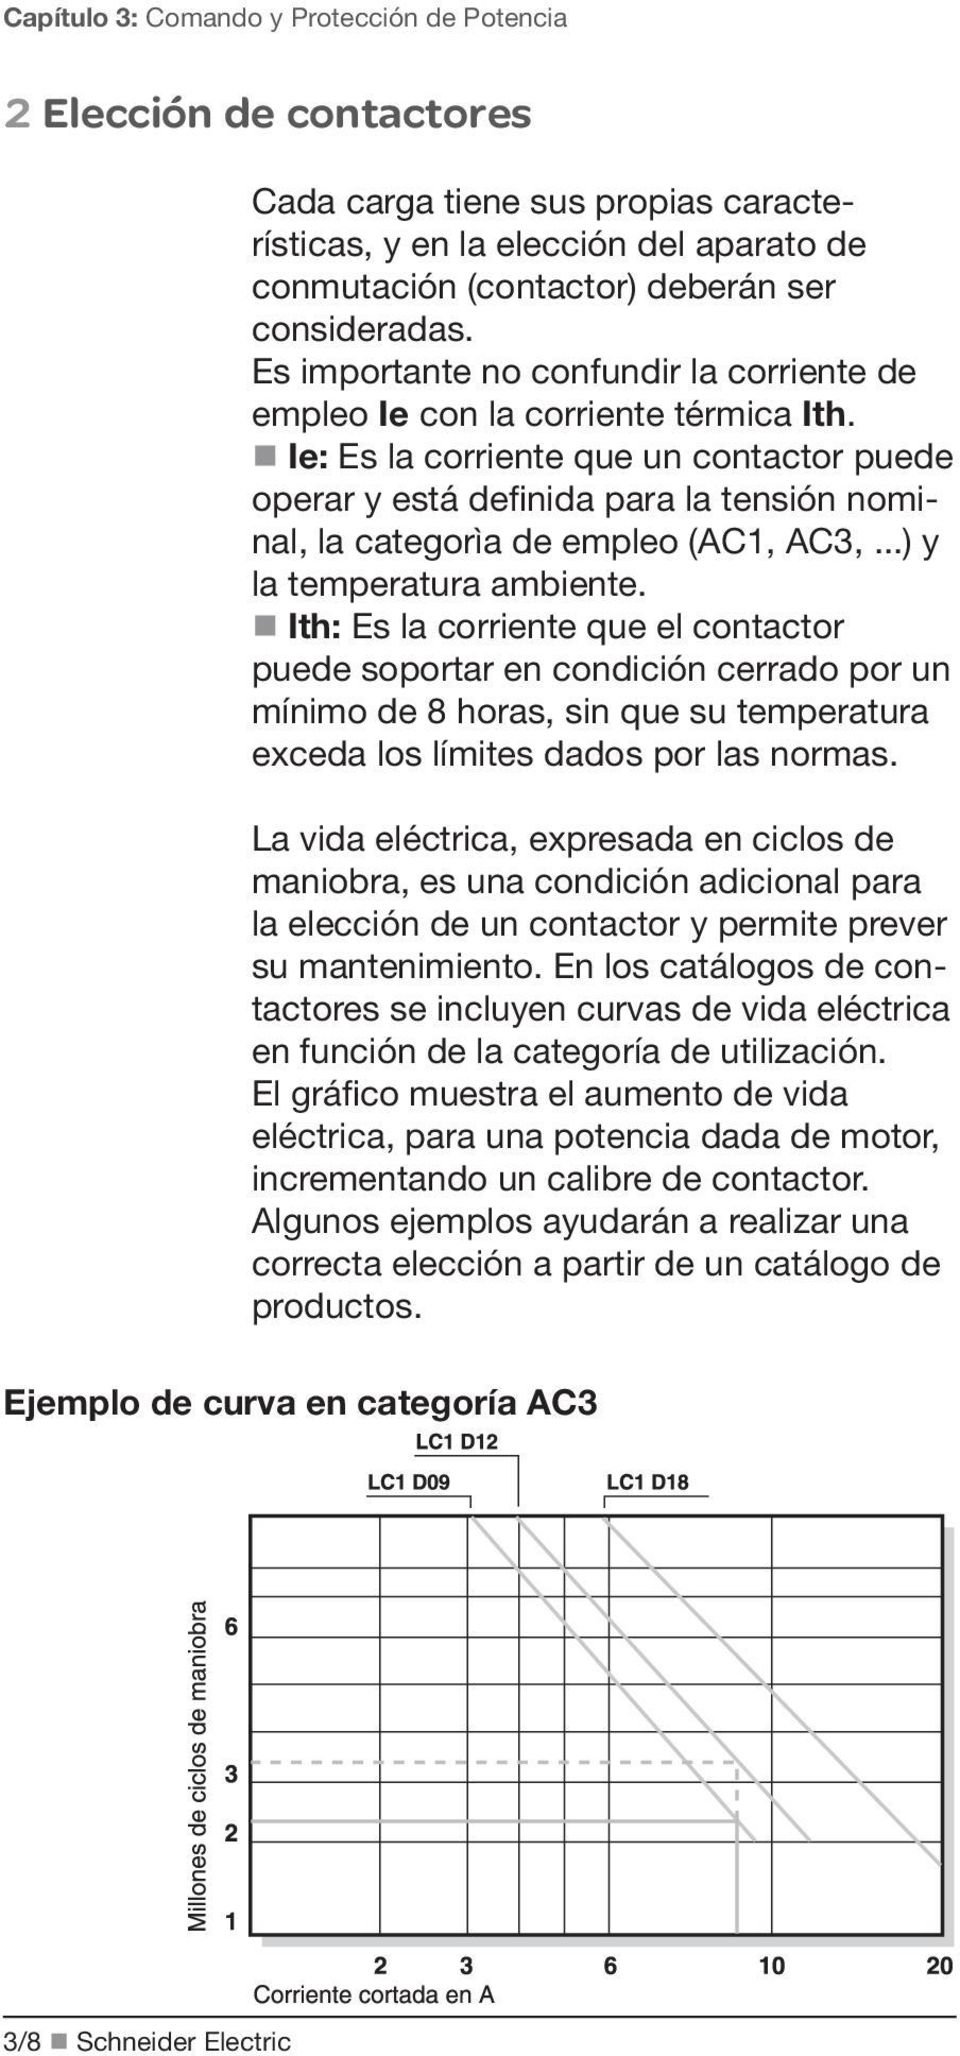 Ie: Es la corriente que un contactor puede operar y está definida para la tensión nominal, la categorìa de empleo (AC1, AC3,...) y la temperatura ambiente.